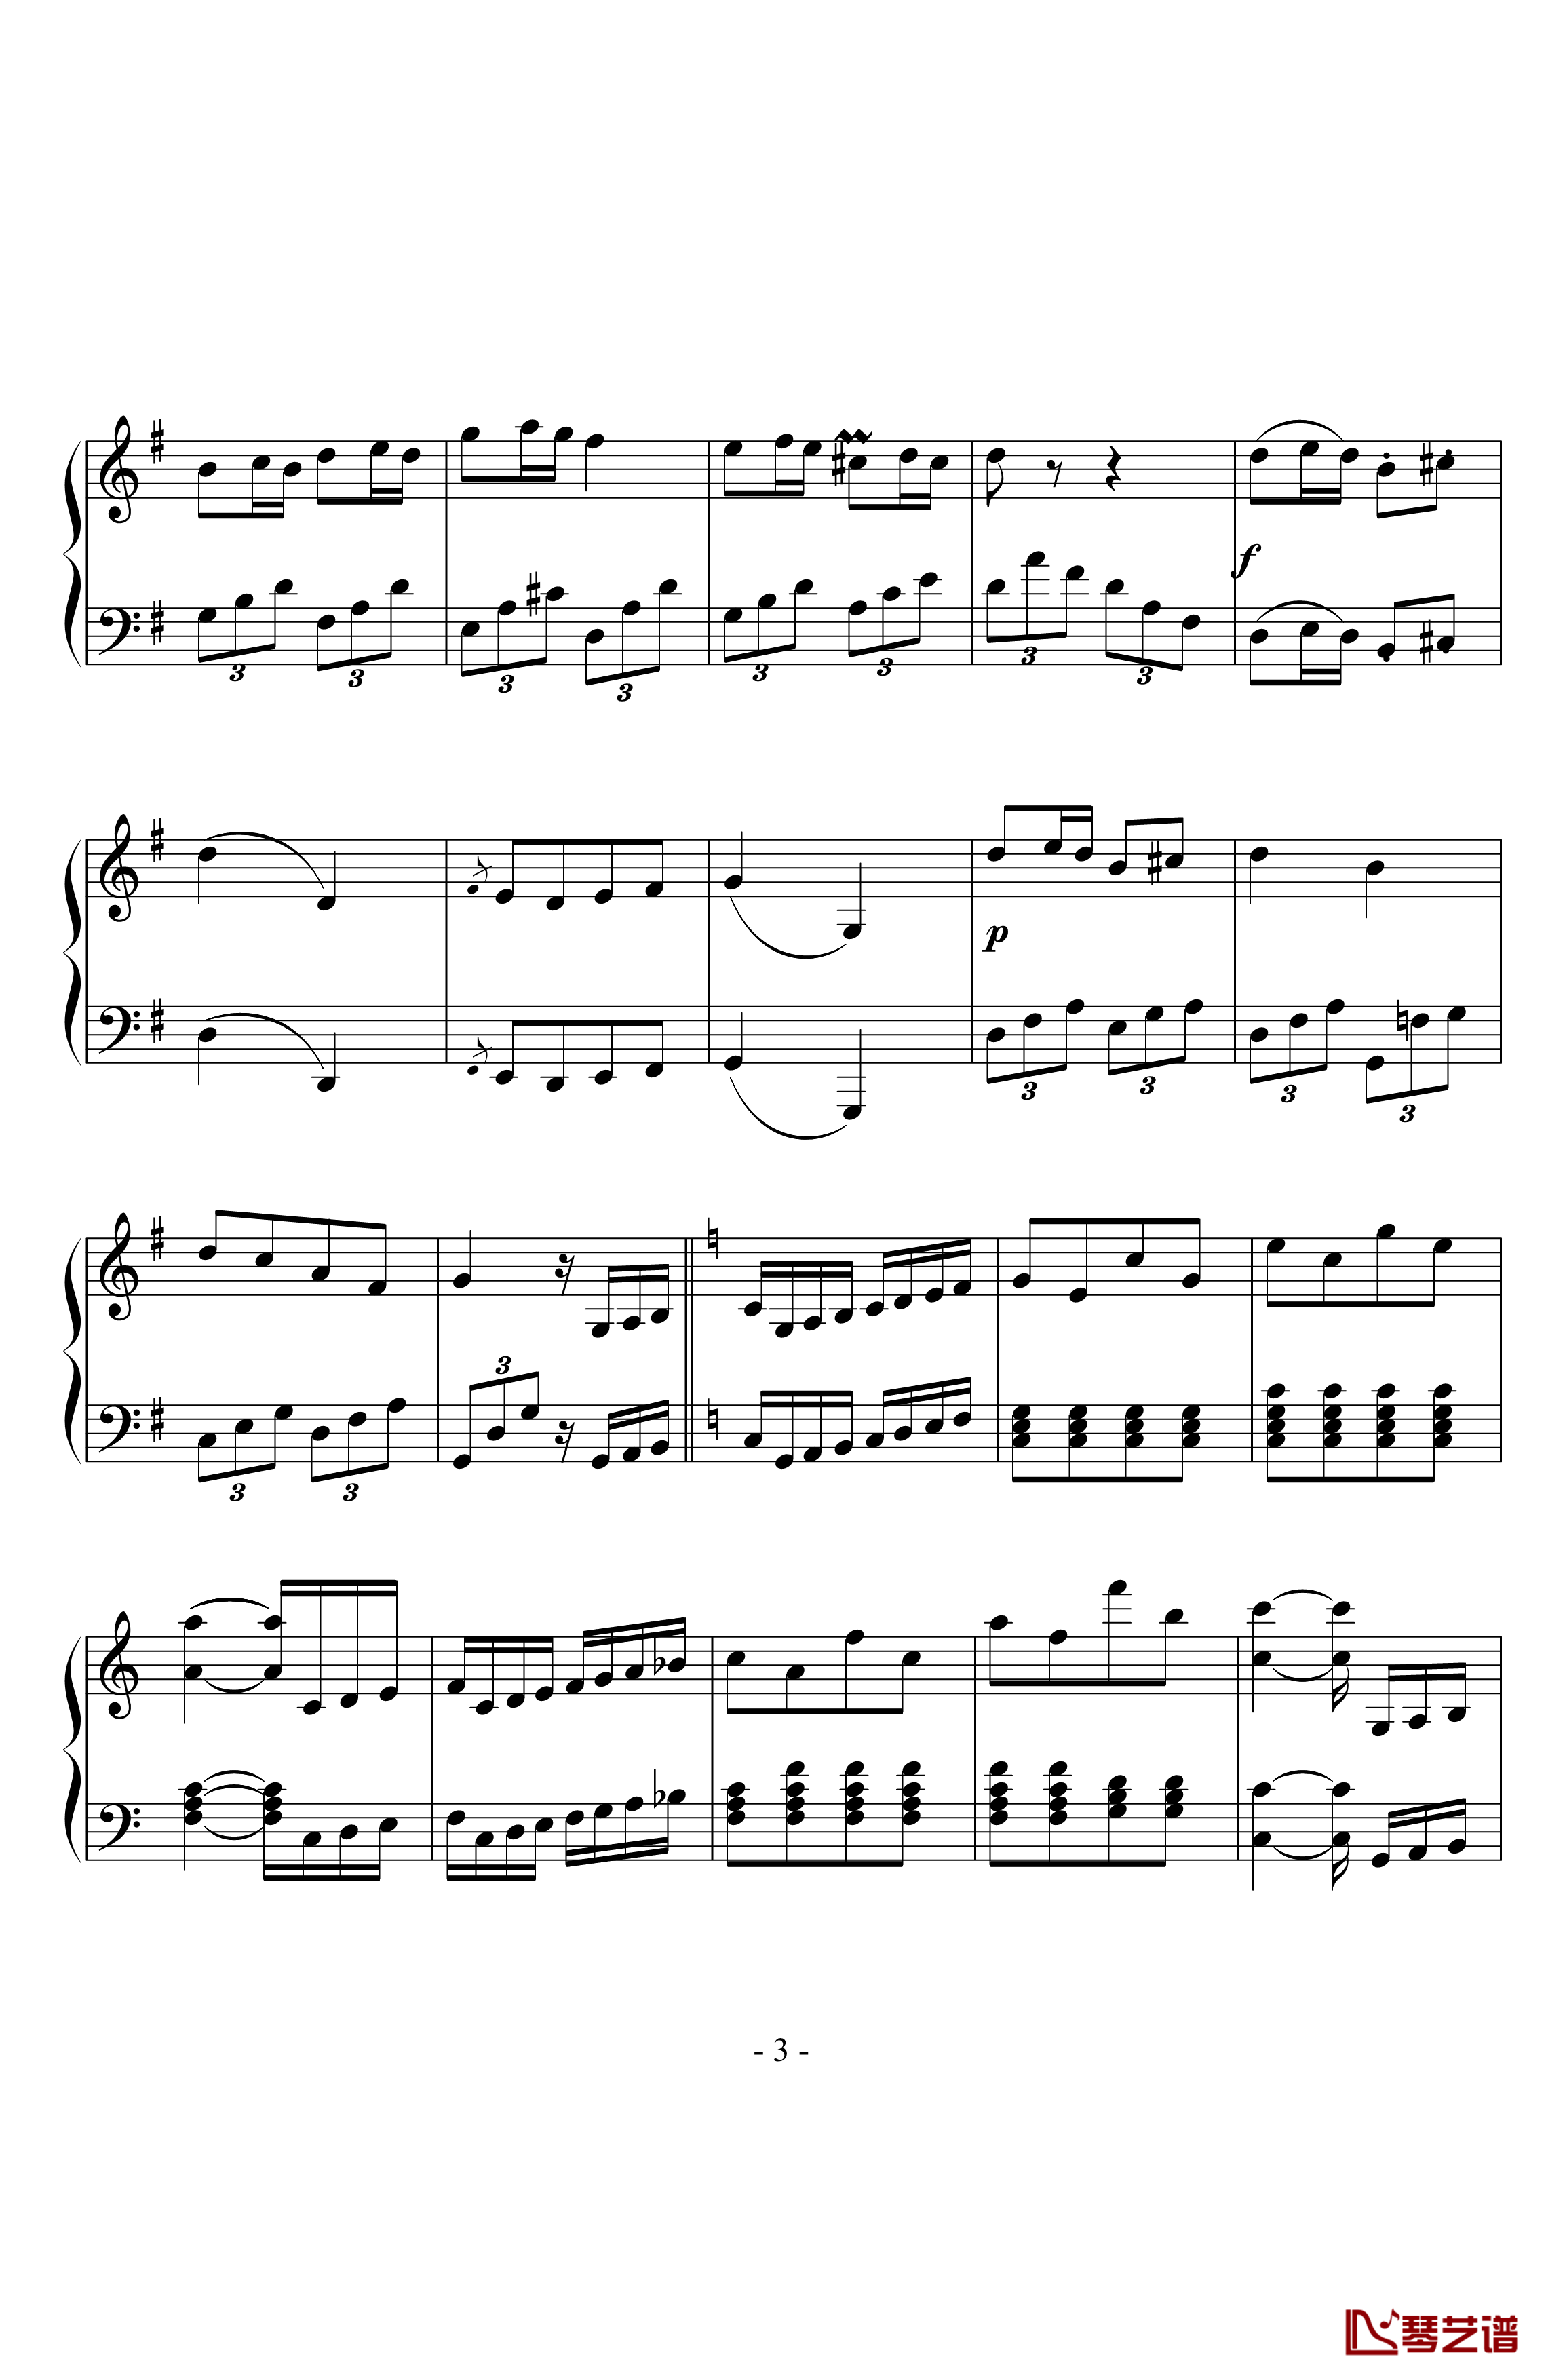 贝多芬第二十五钢琴奏鸣曲钢琴谱-贝多芬-beethoven3